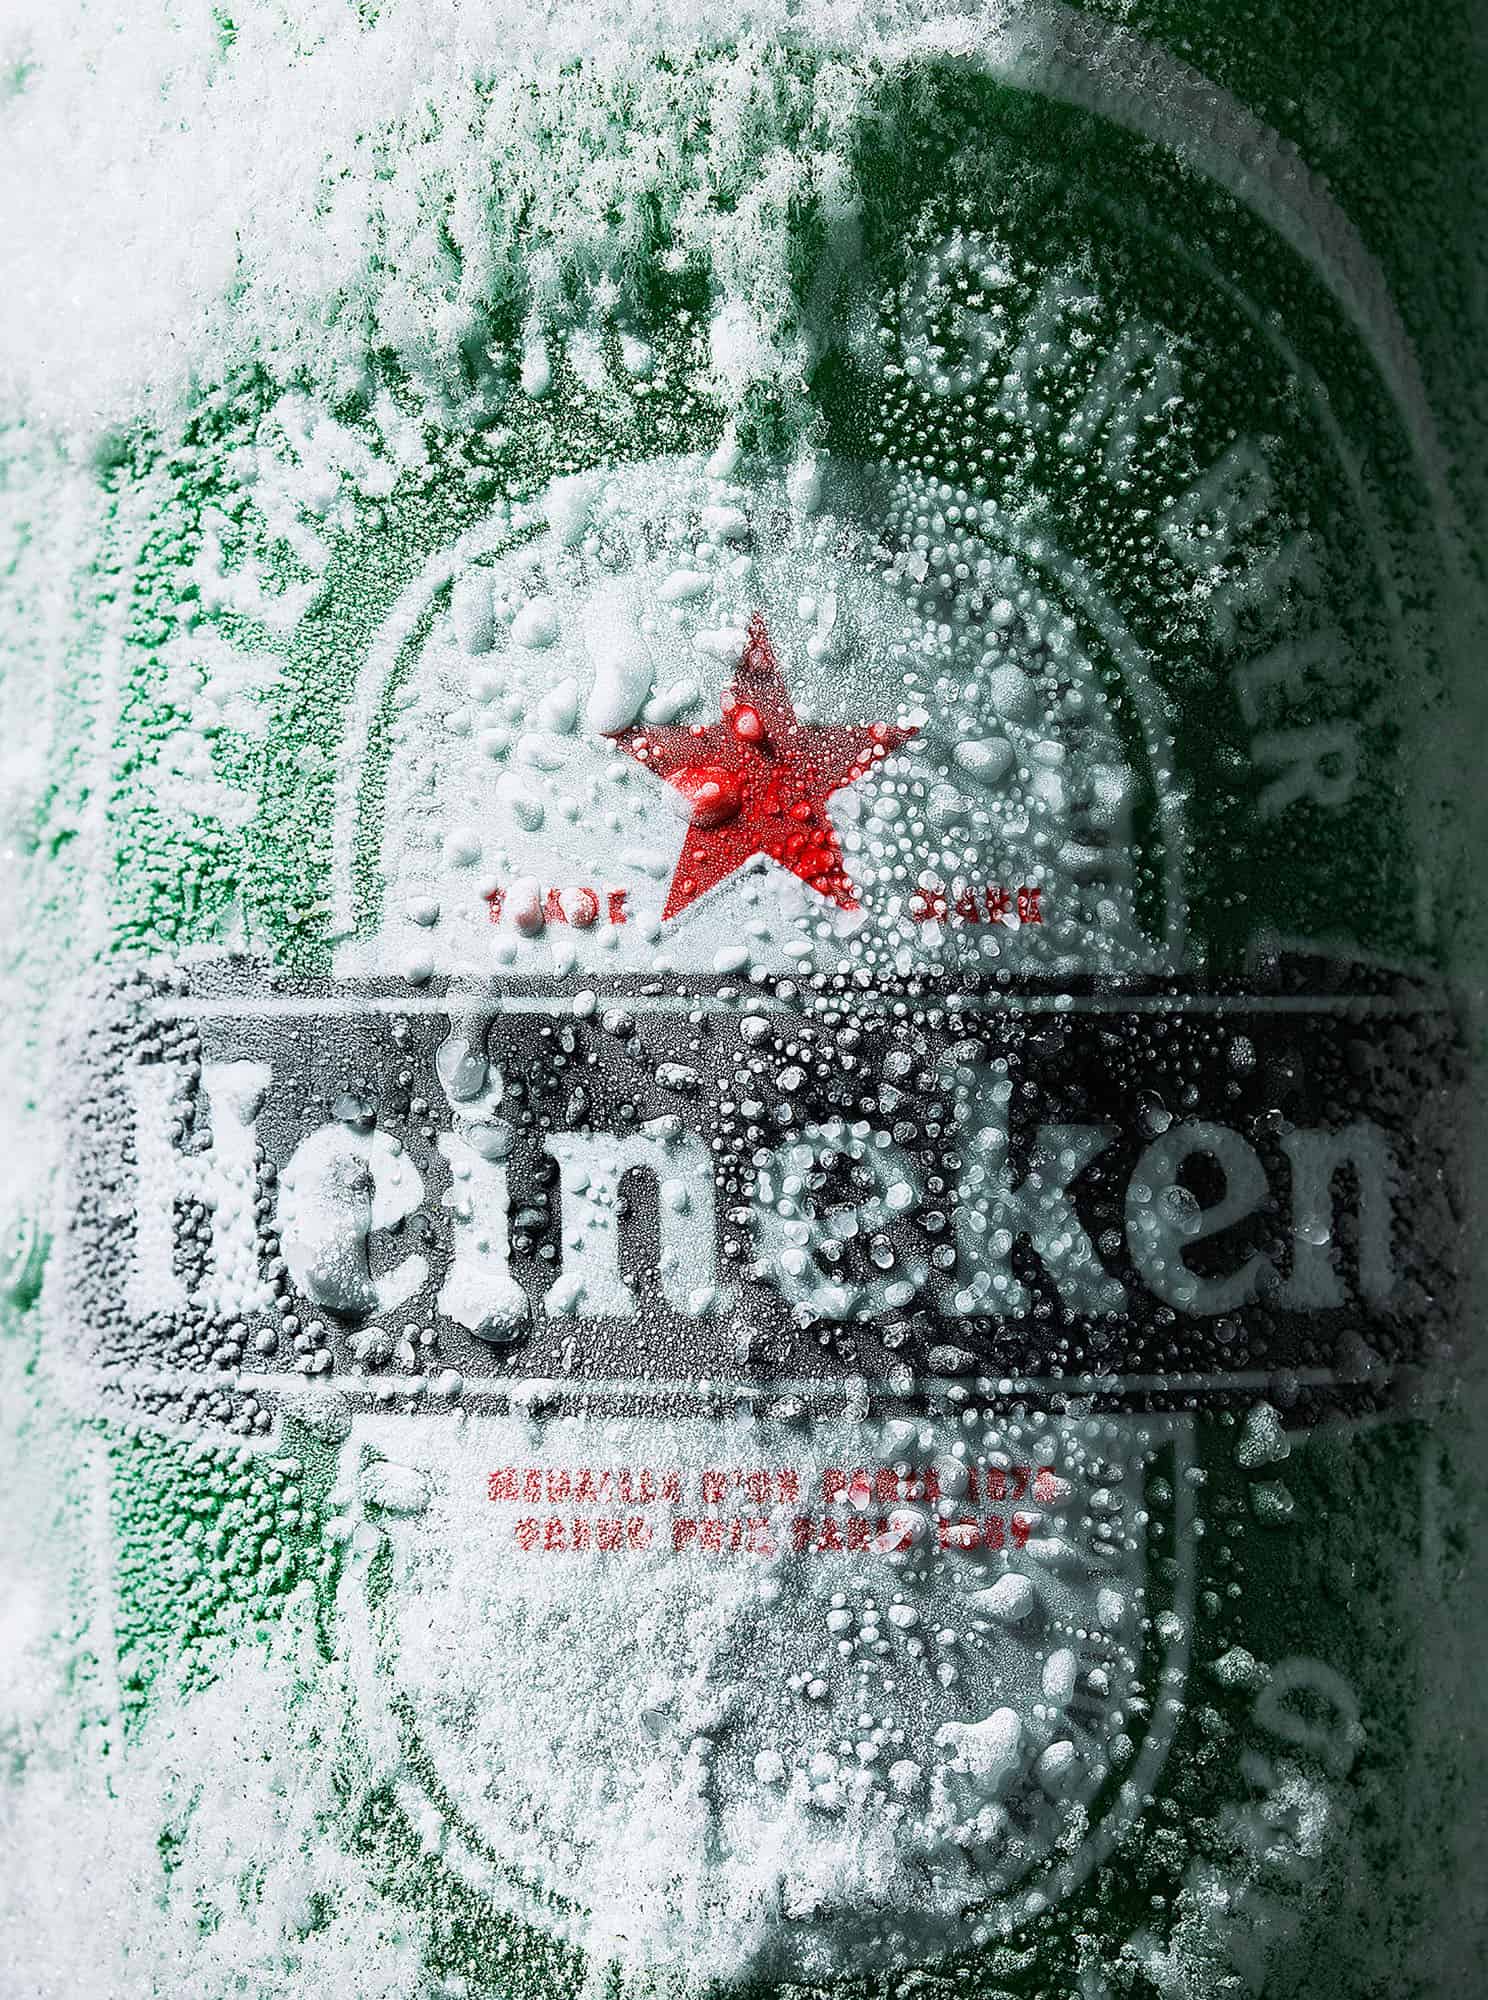 Frozen Can of Heineken Beer